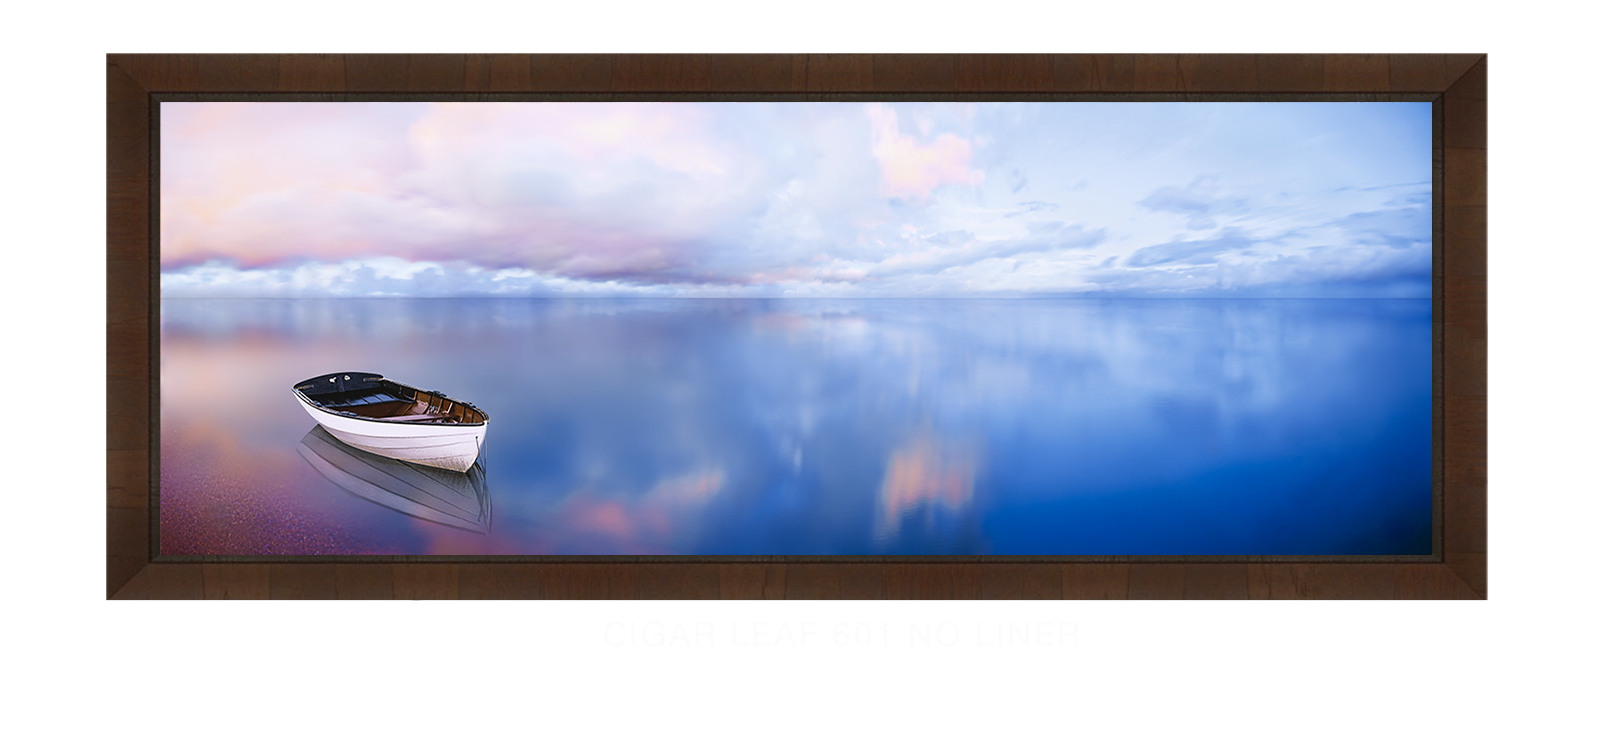 31BLUELAKEBOAT Cigar Leaf 601 w_No Liner T